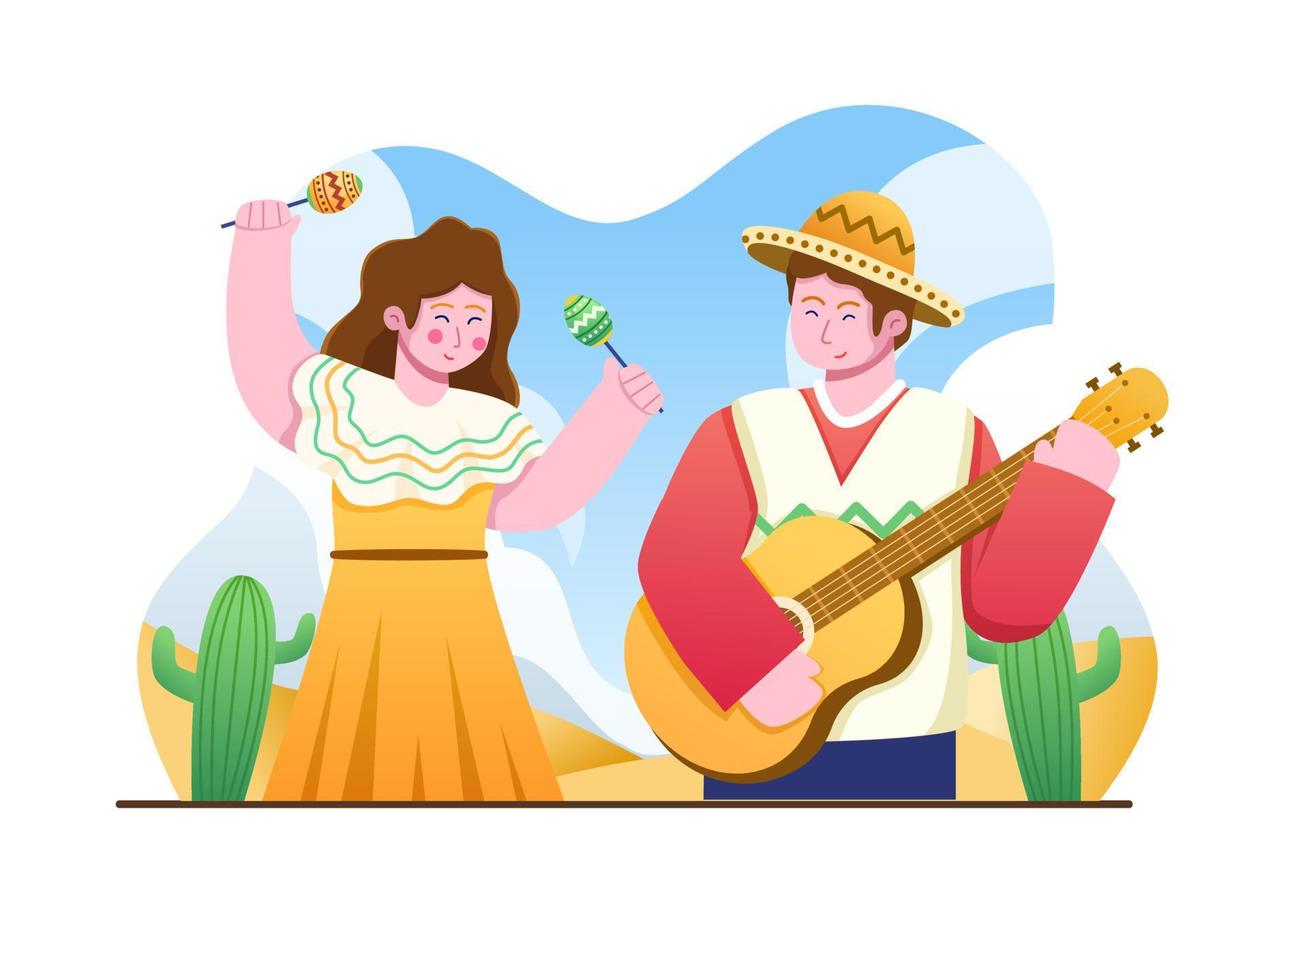 ilustração do festival de cinco de maio com jovem e mulher feliz tocando música e dançando. pode ser usado para cartão postal, cartaz, convite, banner, web, mídia social, etc. vetor